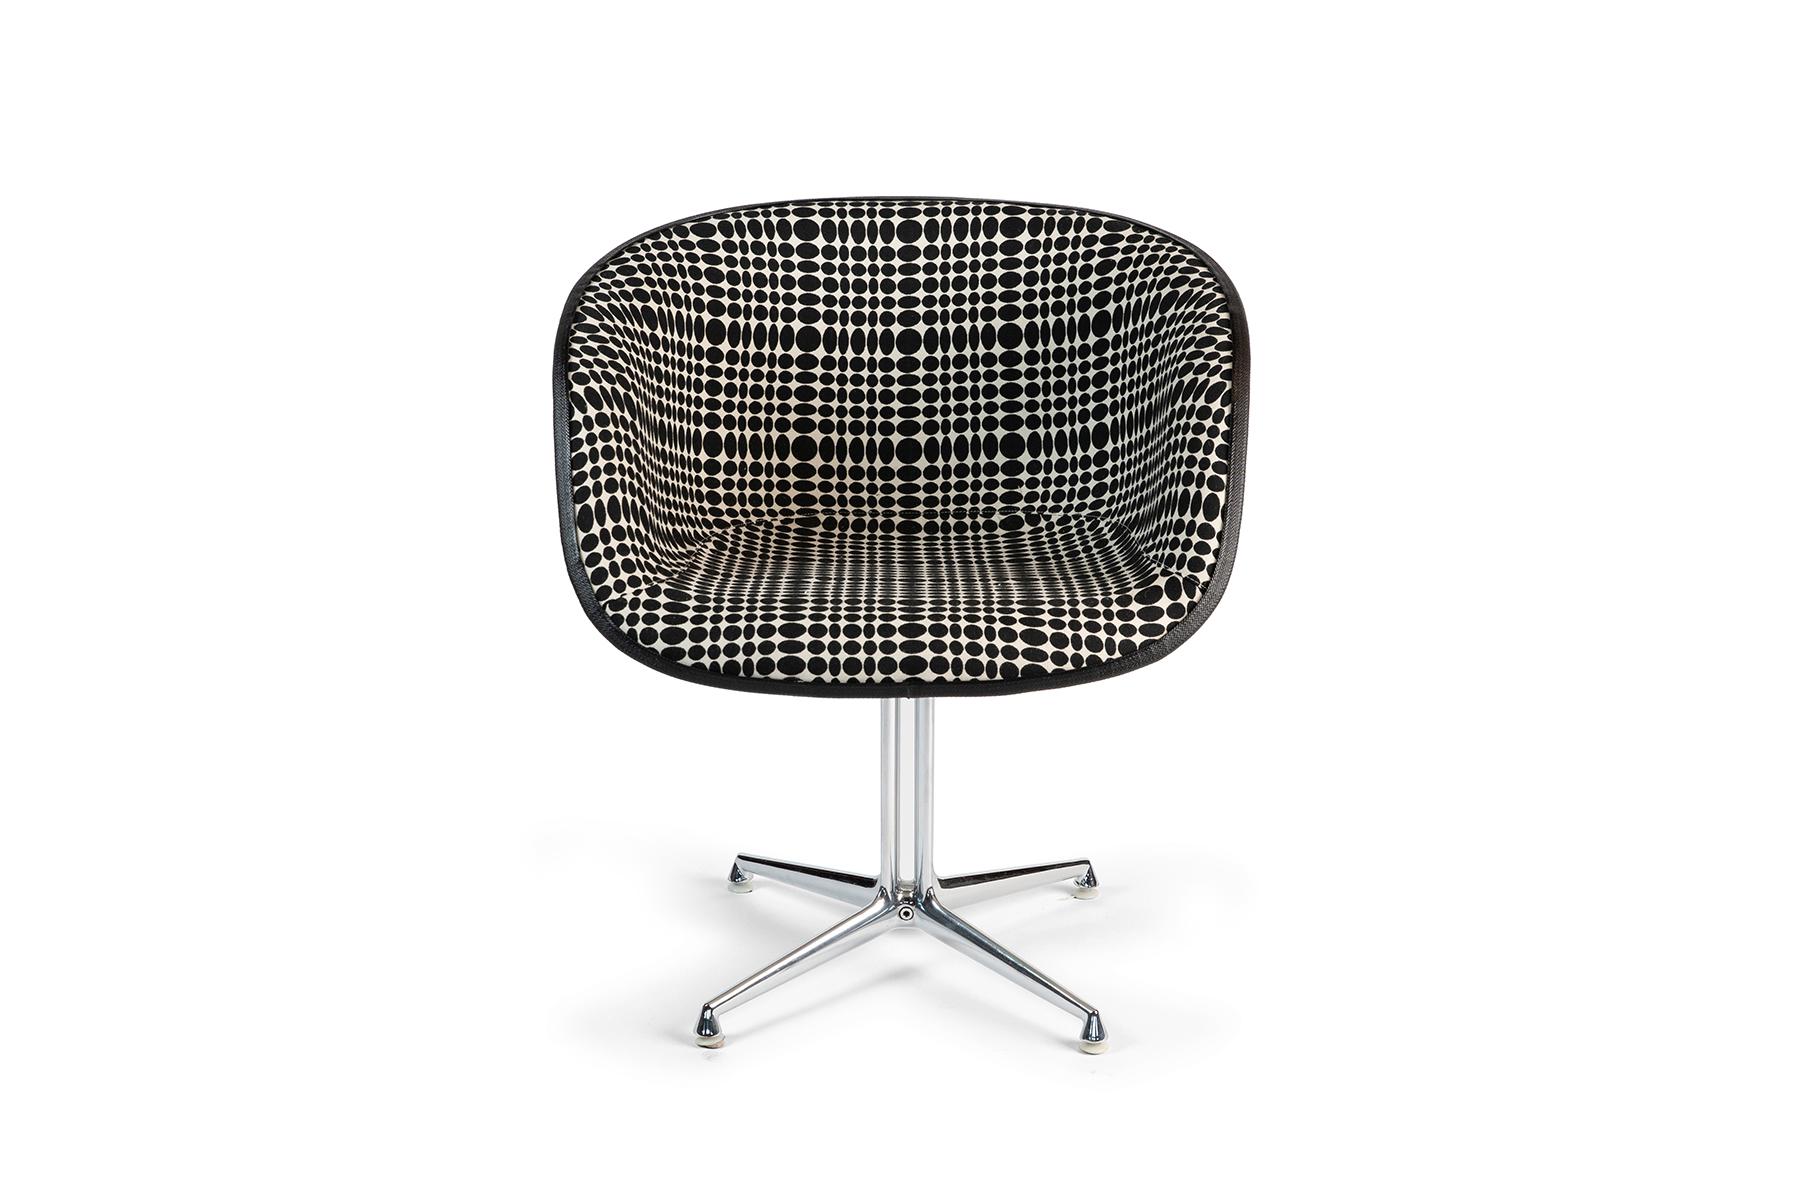 Paire de chaises La Fonda par Charles & Ray Eames pour Herman Miller vers la fin des années 1960. Ces exemplaires rares ont des bases en acier poli La Fonda et ont été tapissés dans un tissu Op Art à points noirs et blancs Verner Panton pour